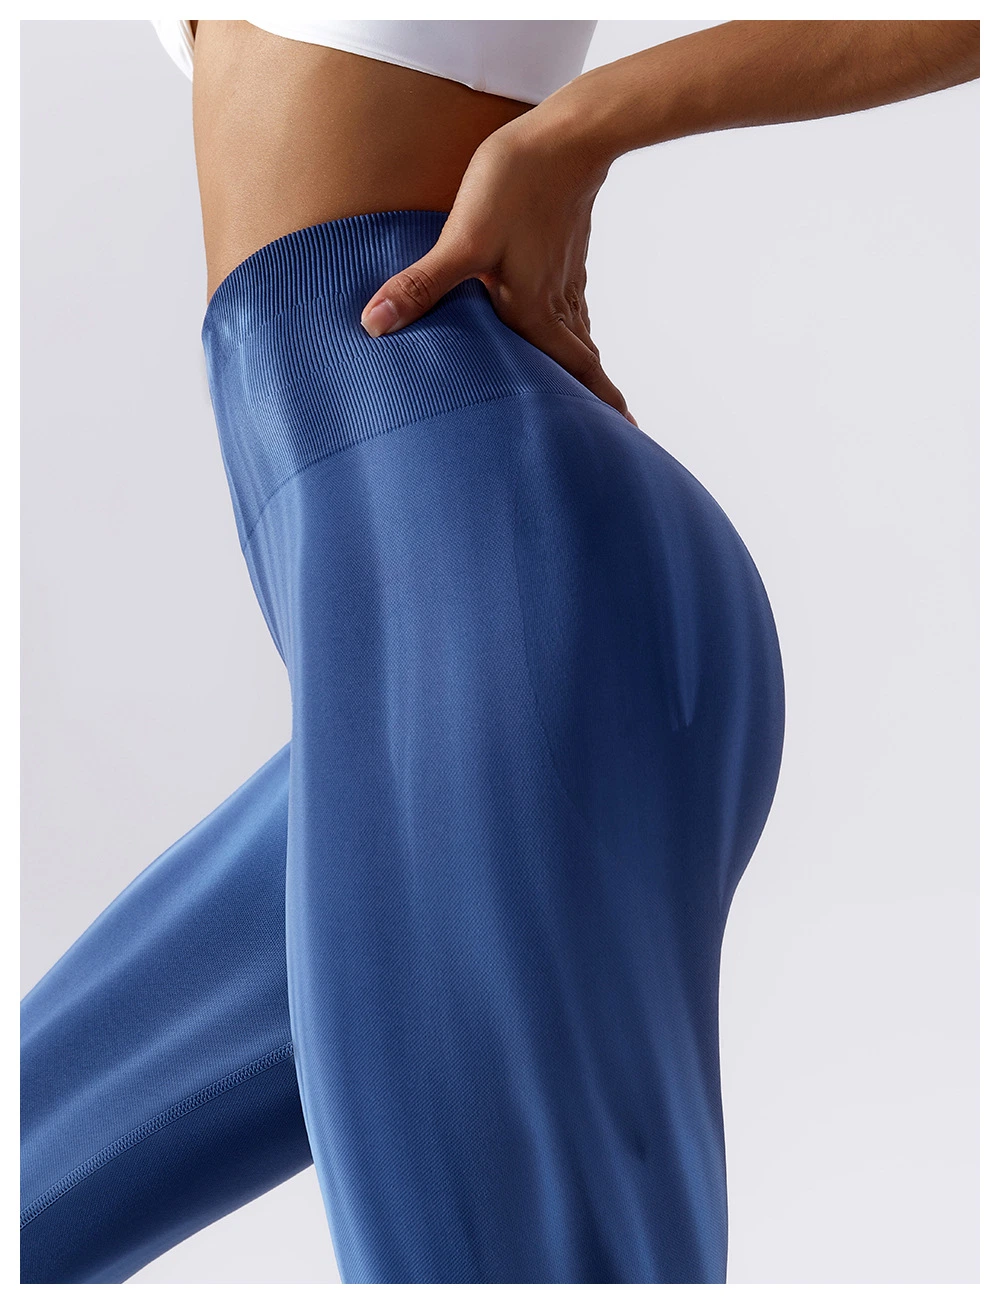 New Style Tie-Dye Seamless Sportswear Yoga Pants Workout Fitness Women Scrunch Leggings